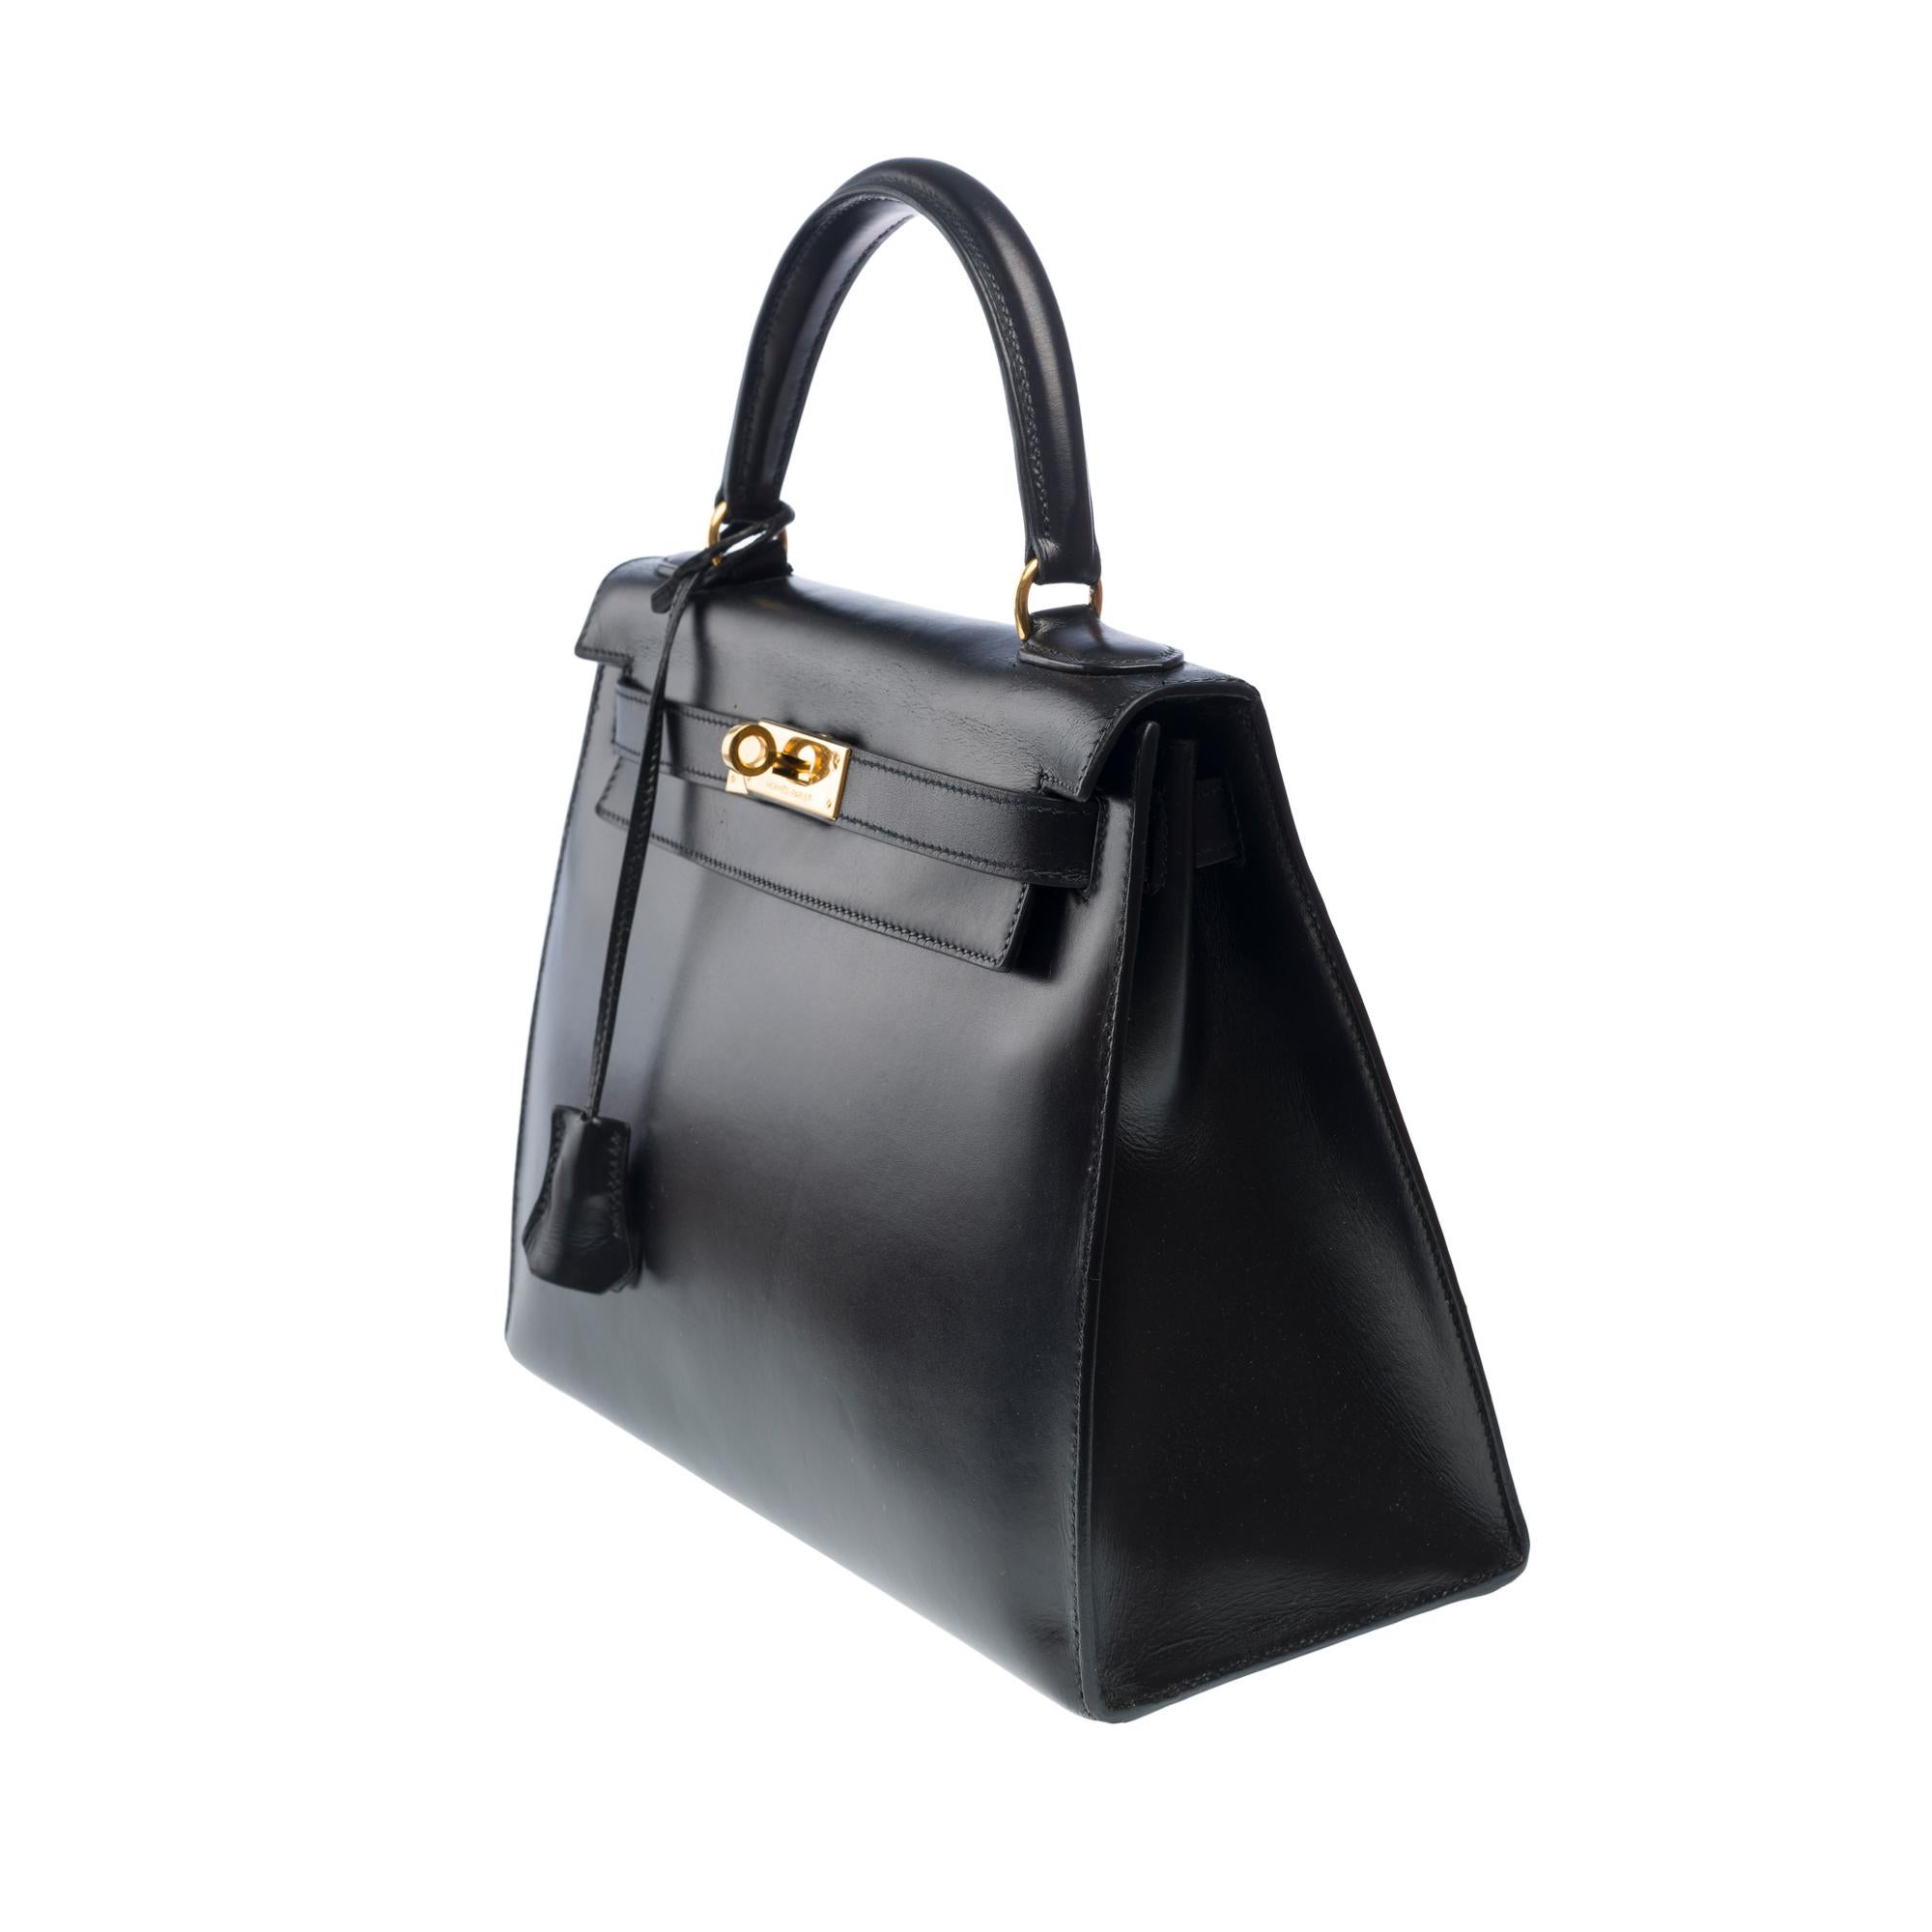 Women's Hermes Kelly 28 sellier handbag in Black box calfskin leather, GHW For Sale